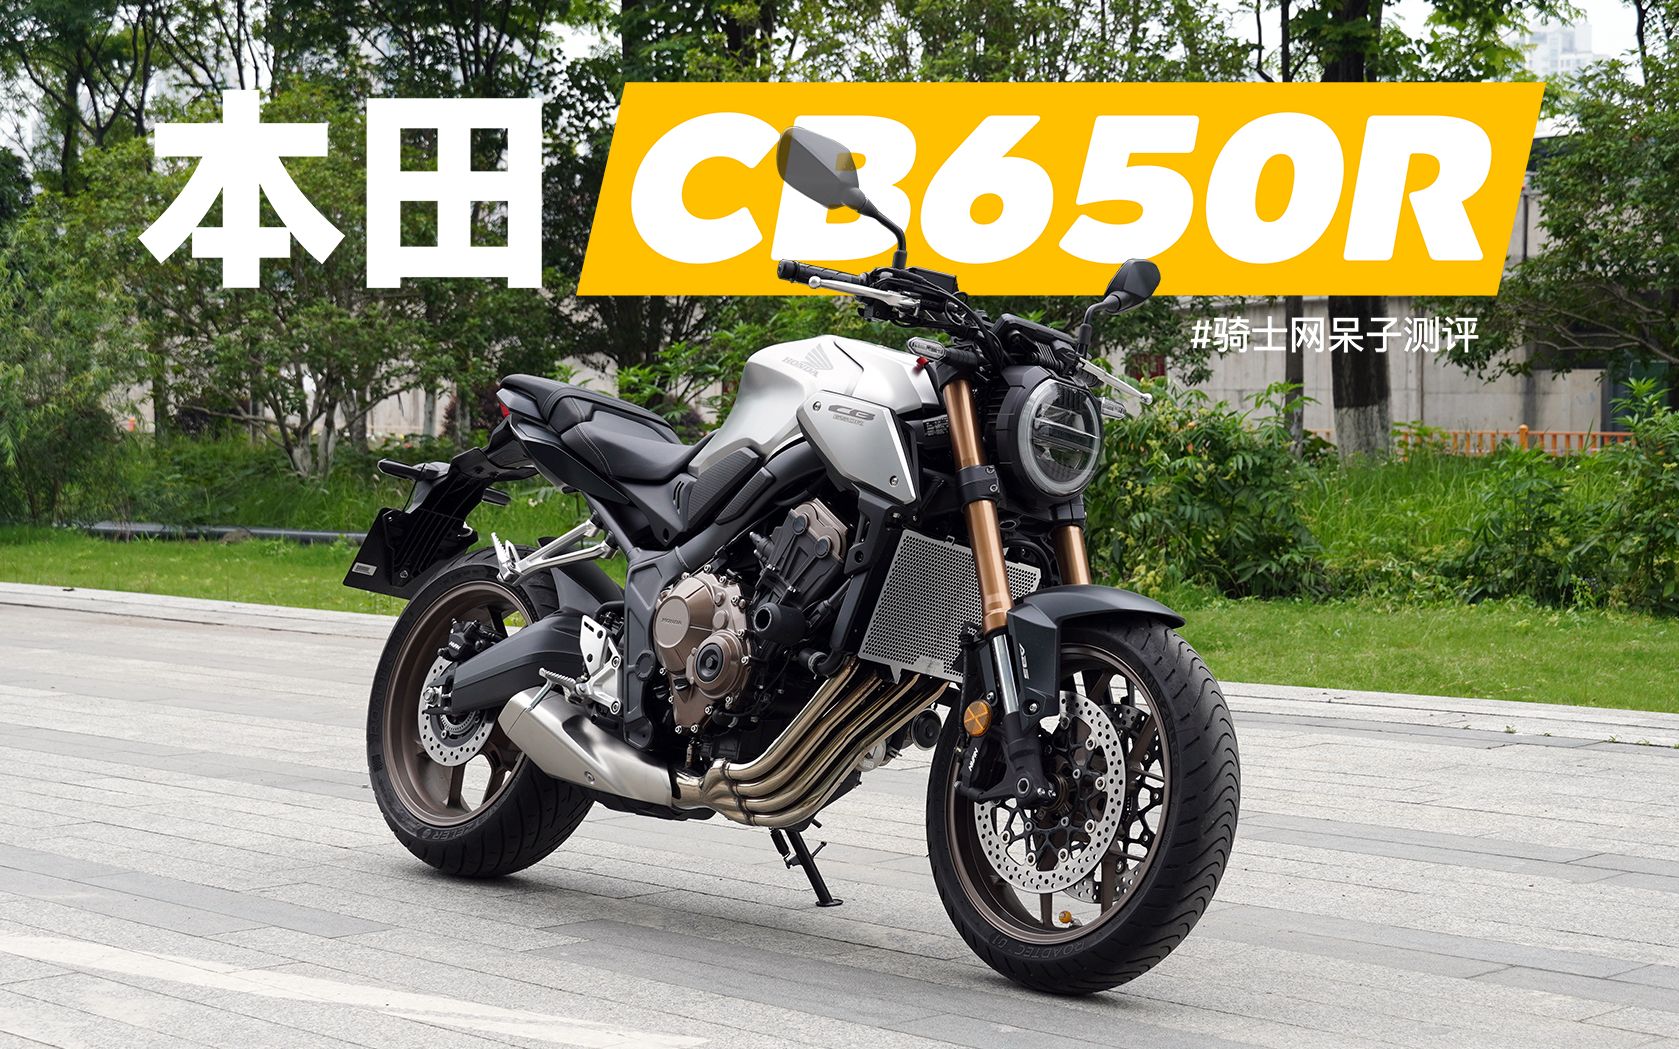 呆子测评 | 本田四缸也是五菱的手下败将， 本田CB650R评测 · 骑士网摩托车测评